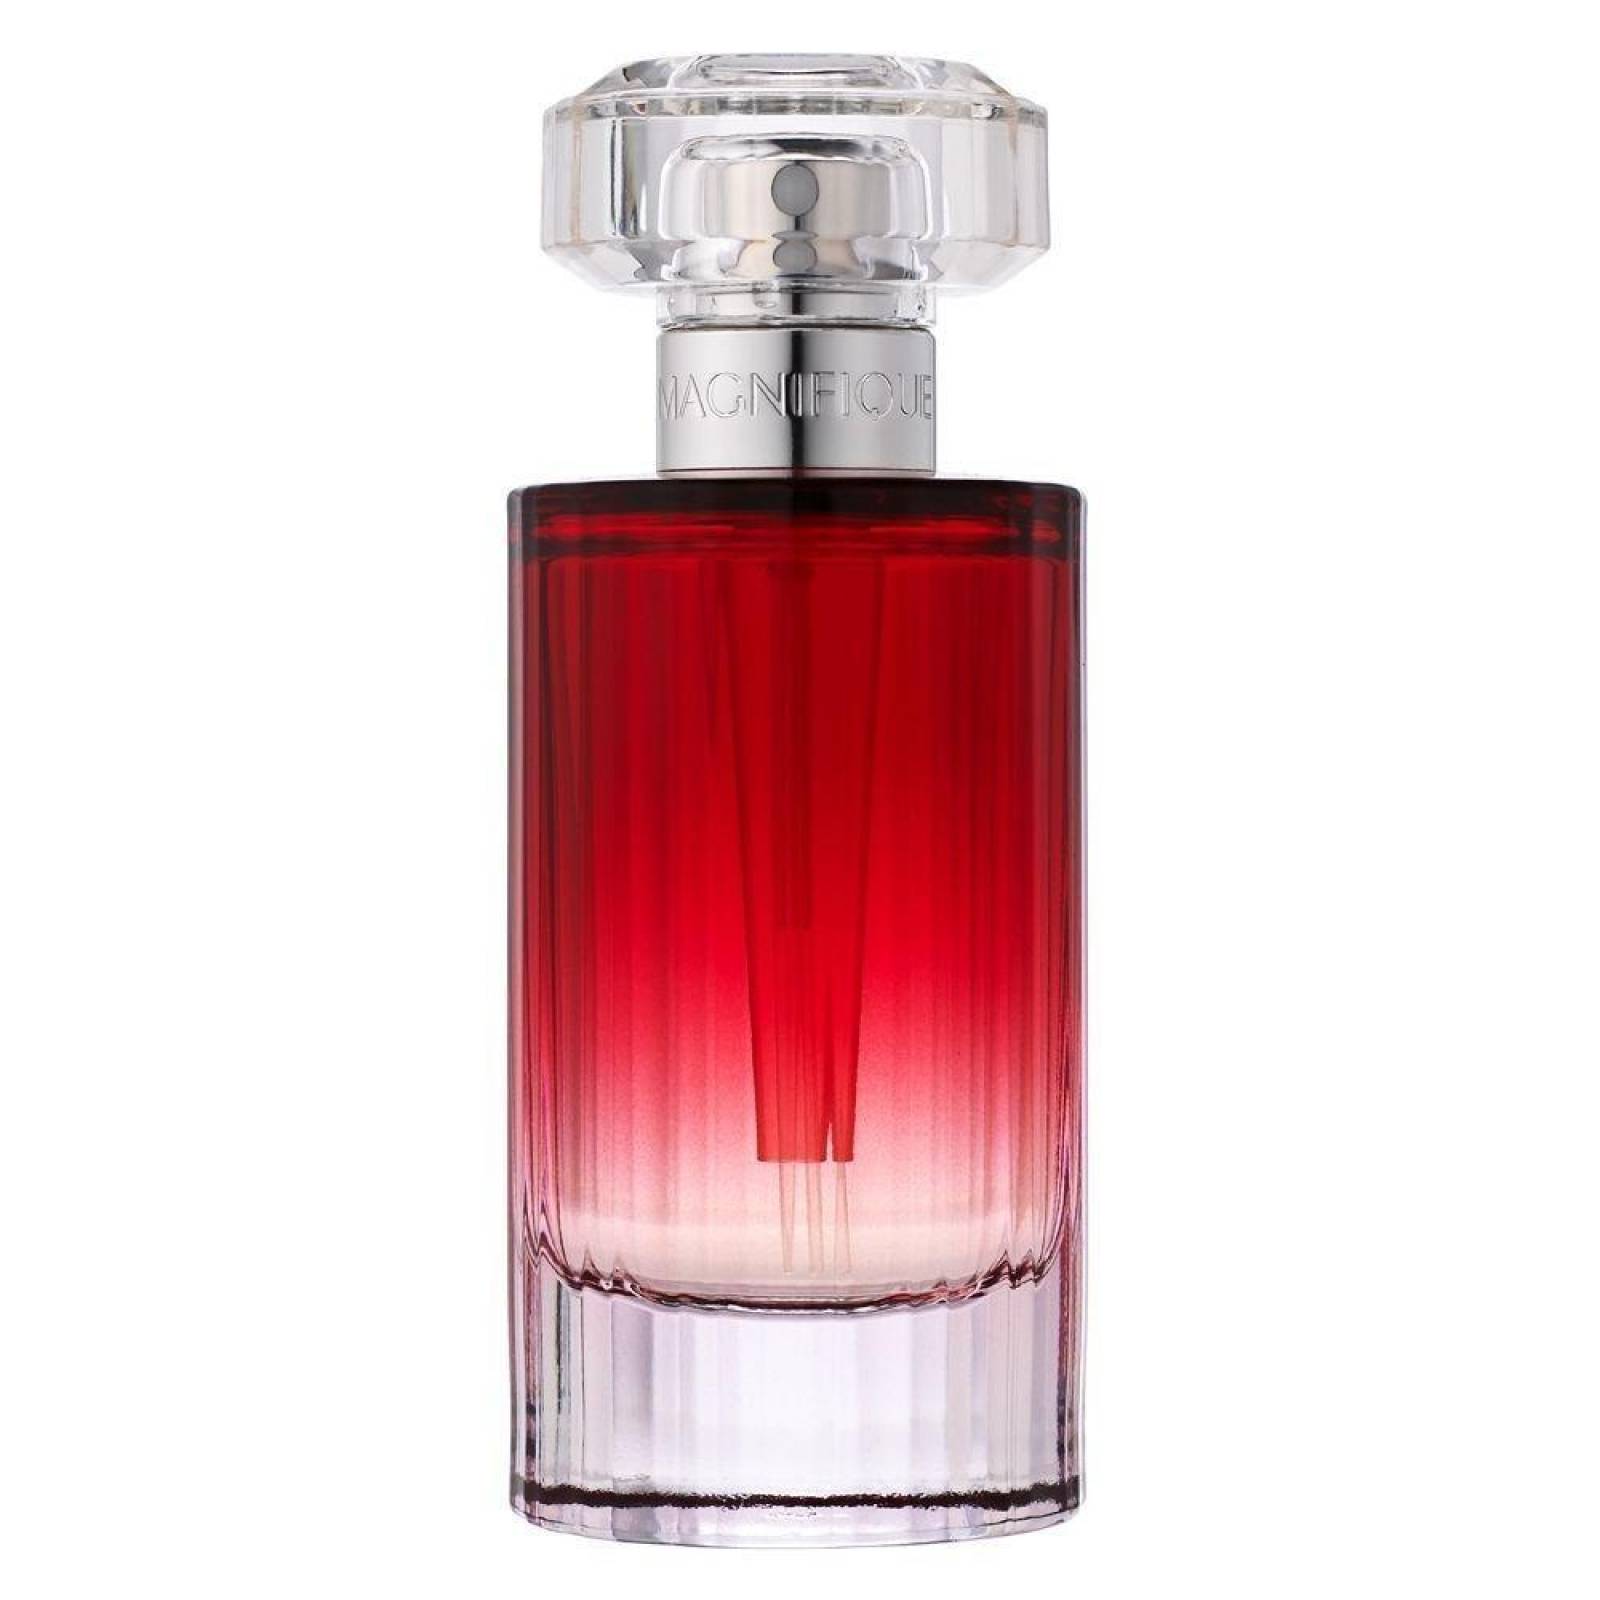  Perfume  magnifique  de lancome edp 75 ml Sears